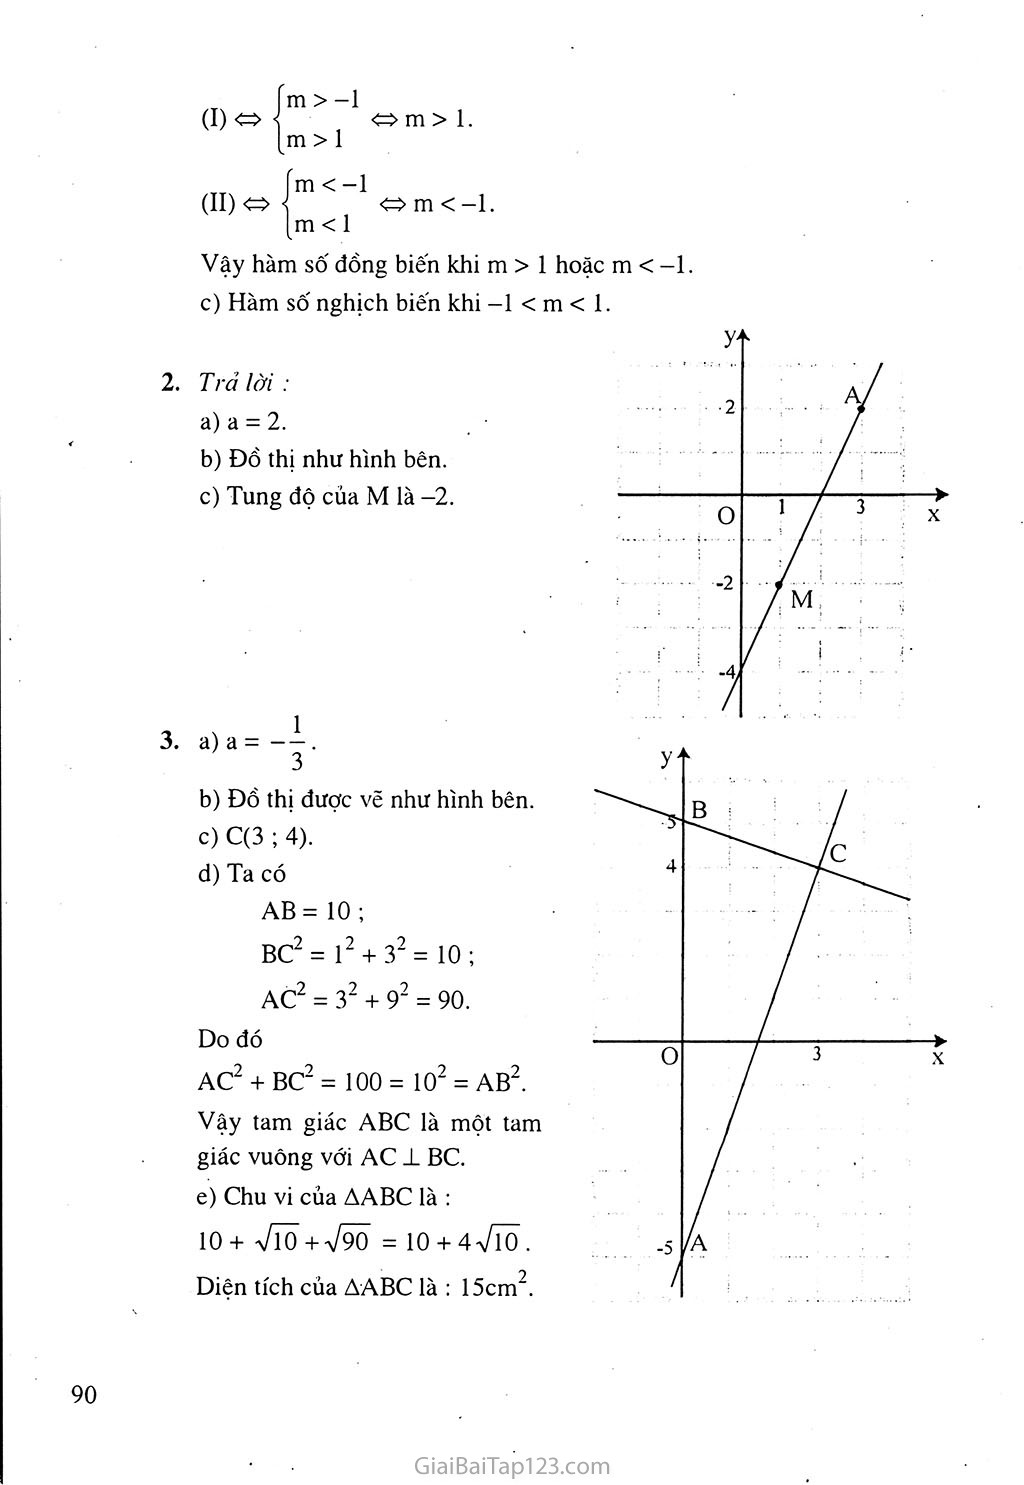 Bài 3. Đồ thị của hàm số y = ax + b (a khác 0) trang 7